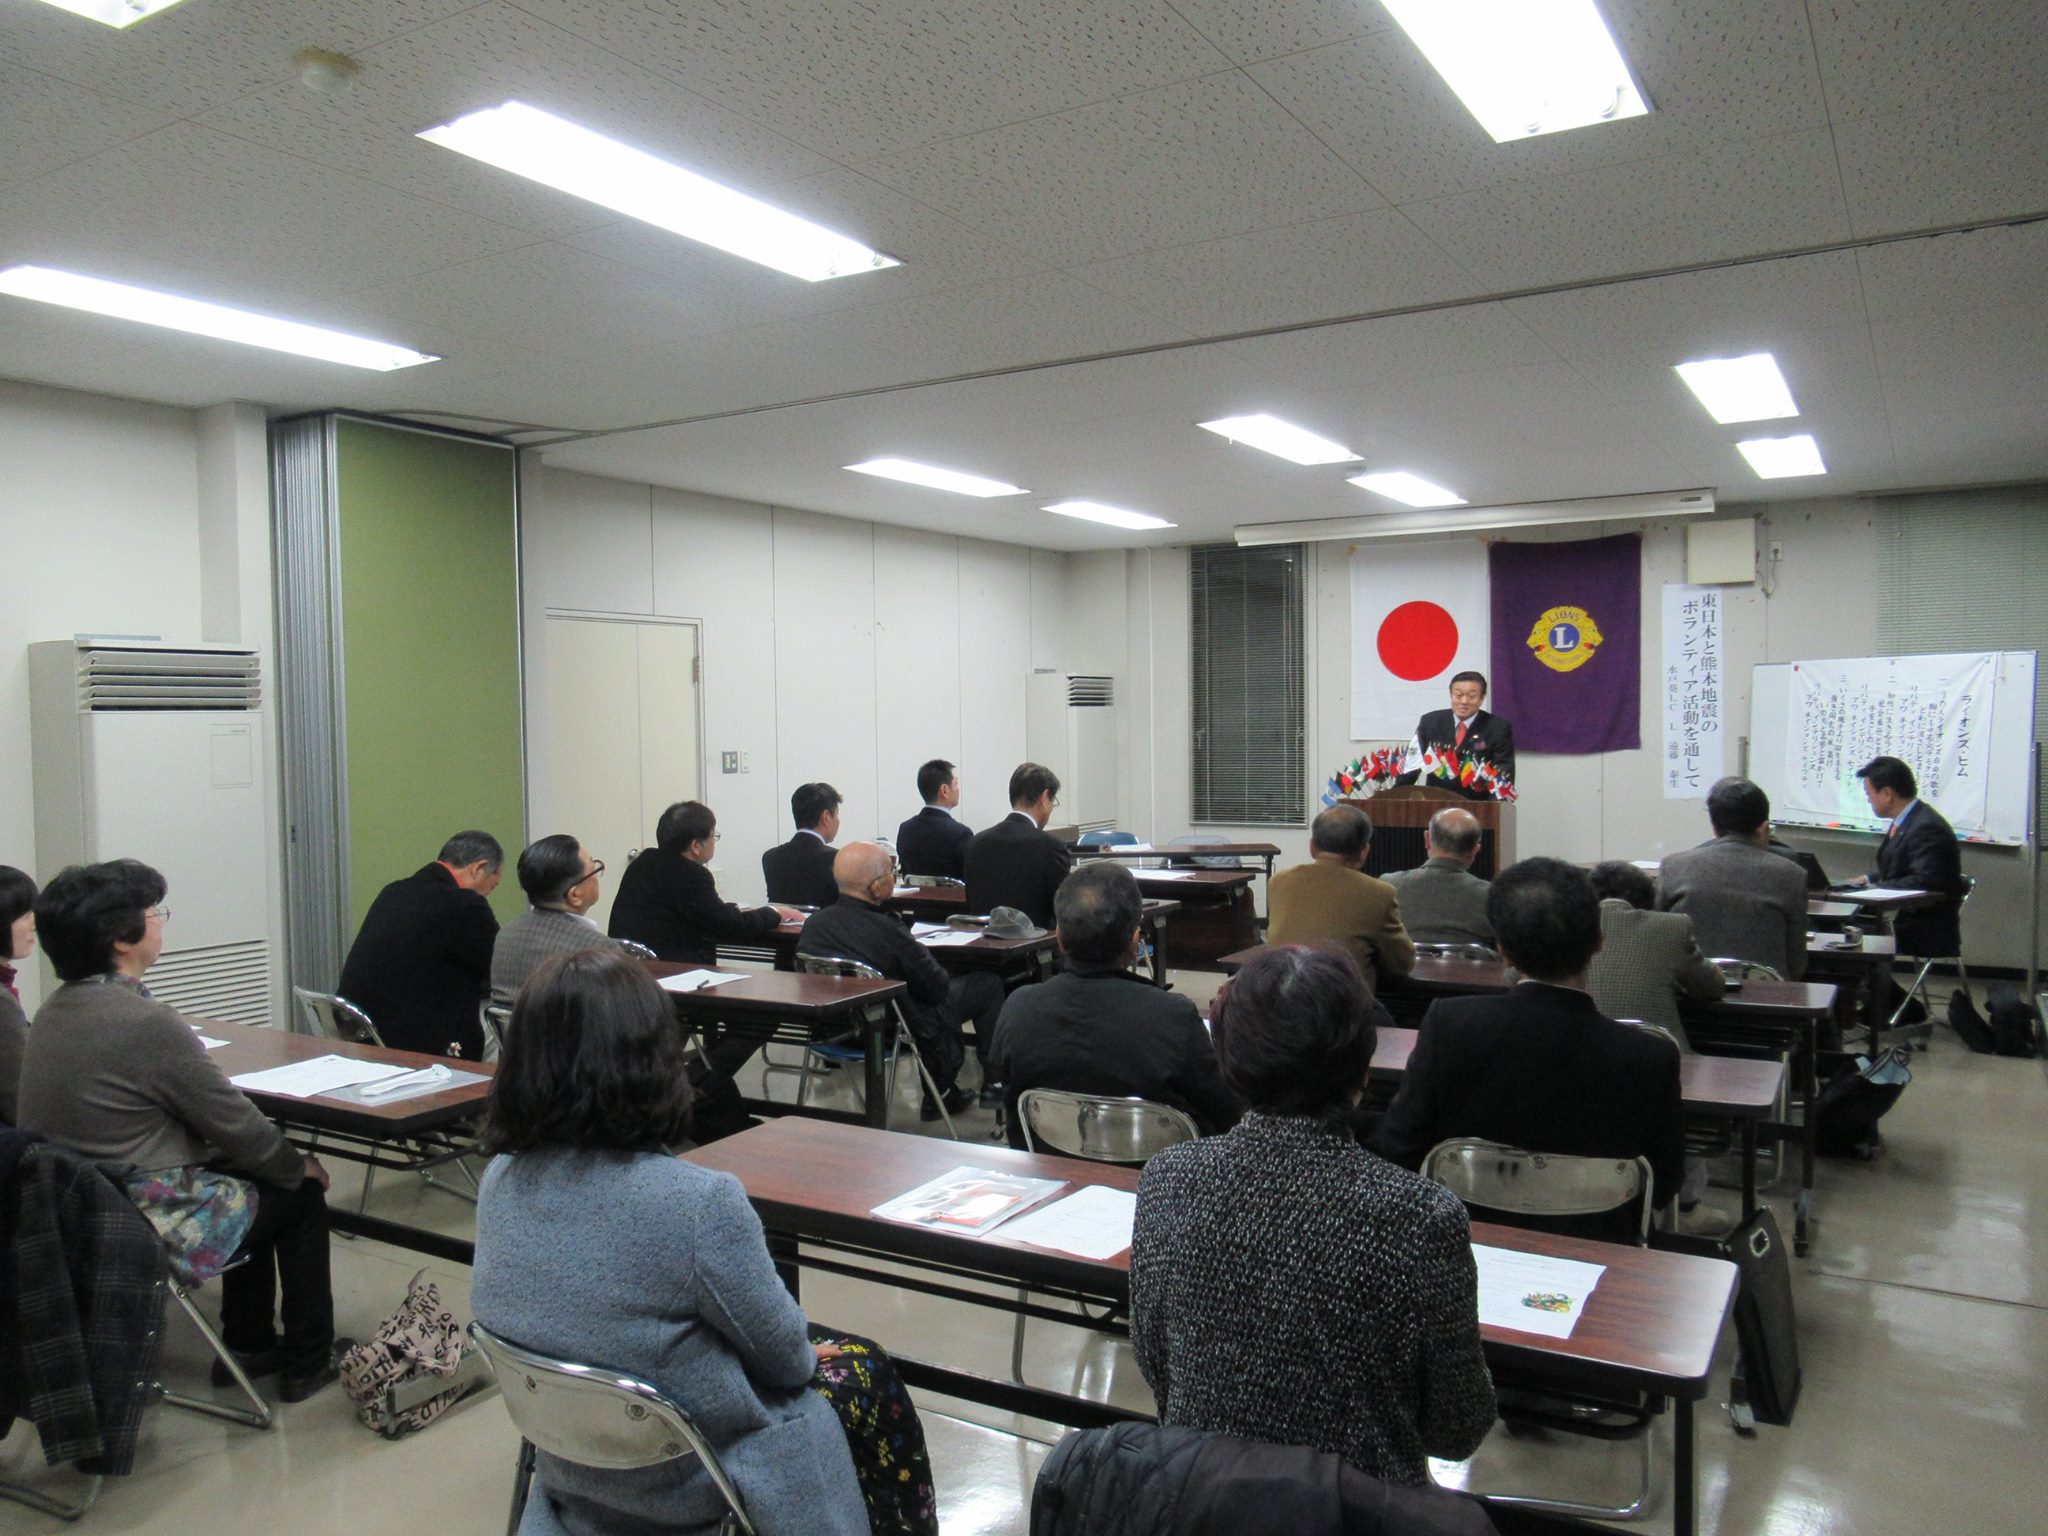 第51期 3月第二例会「東日本と熊本地震のボランティア活動を通して」